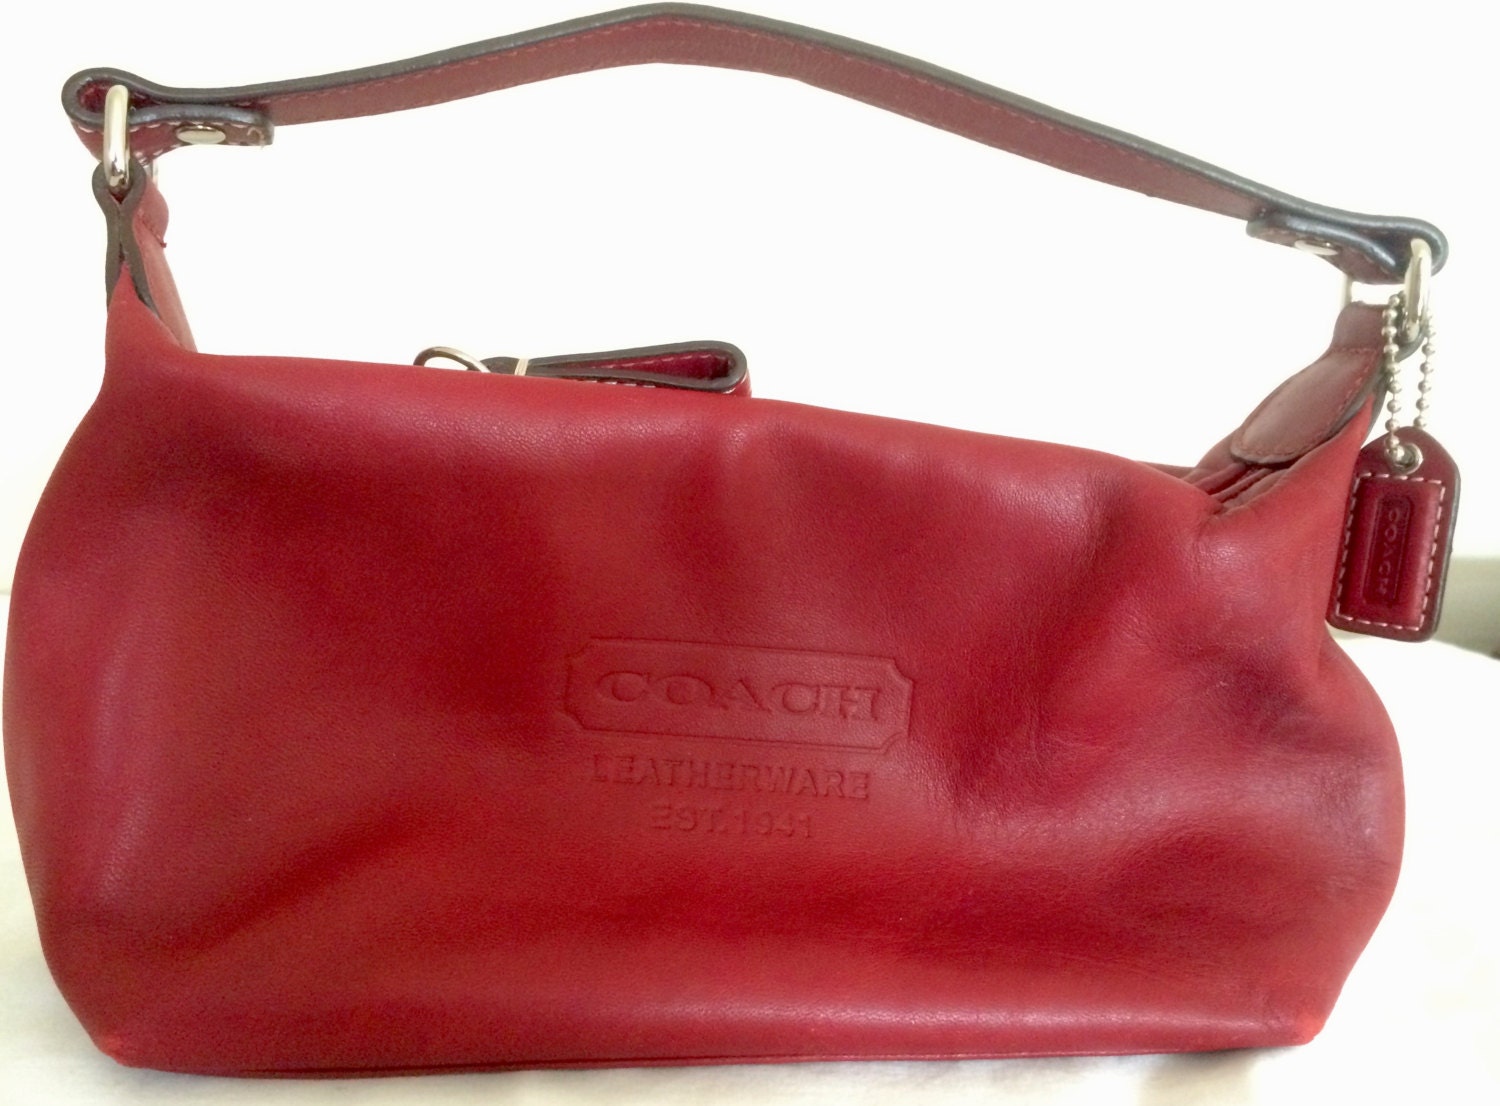 Vintage Coach Small Red Handbag